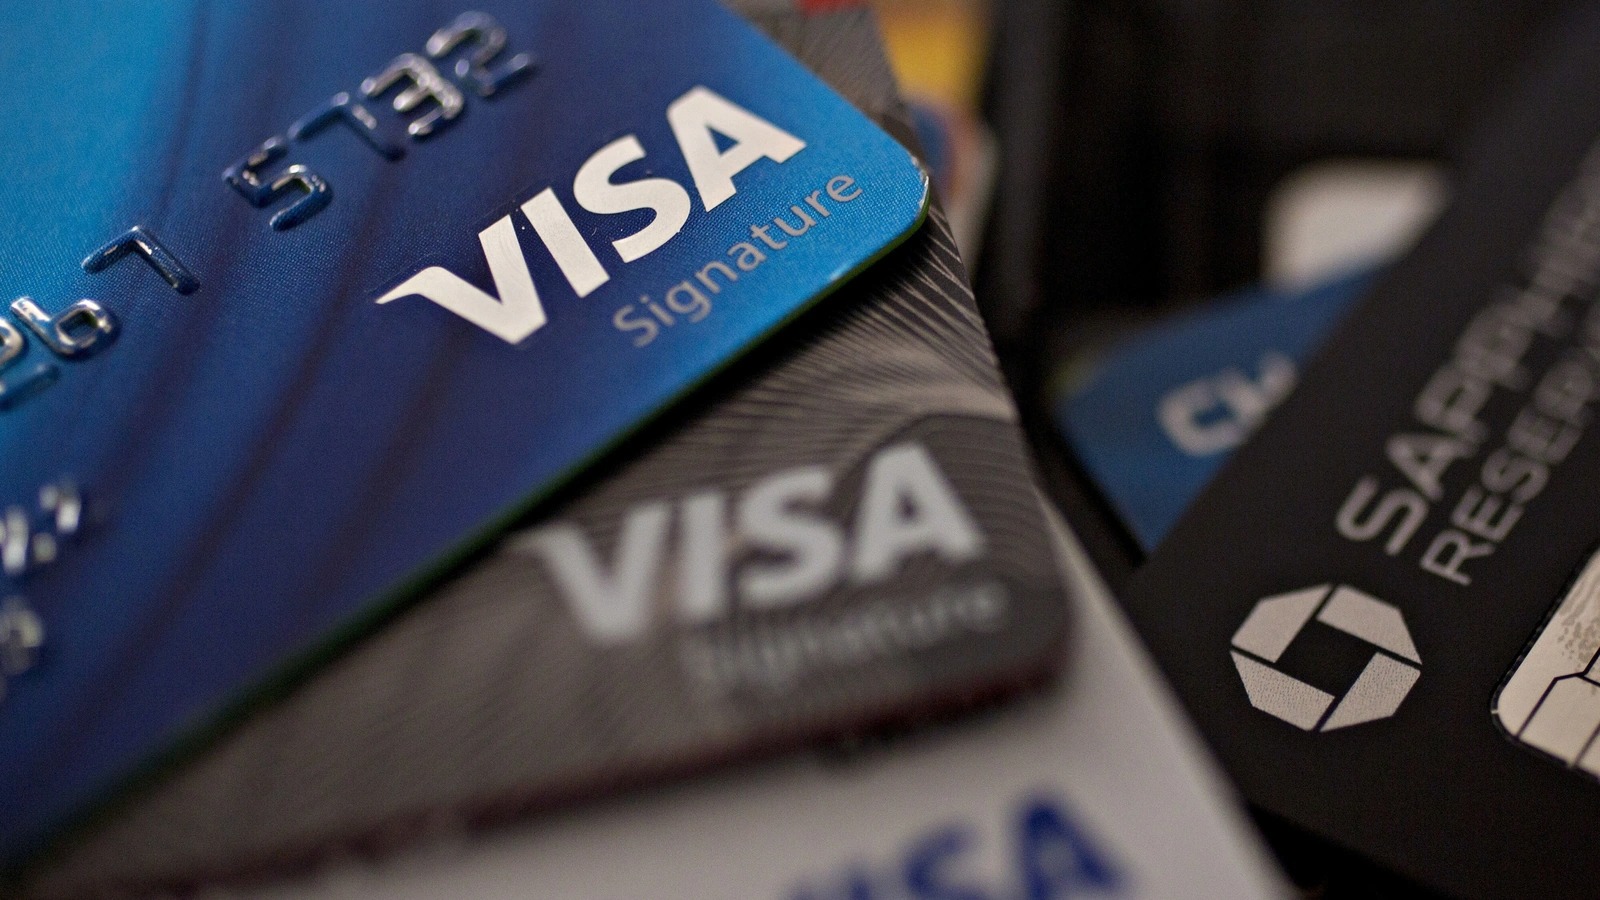 Visa startet eine kryptofokussierte Beratungspraxis